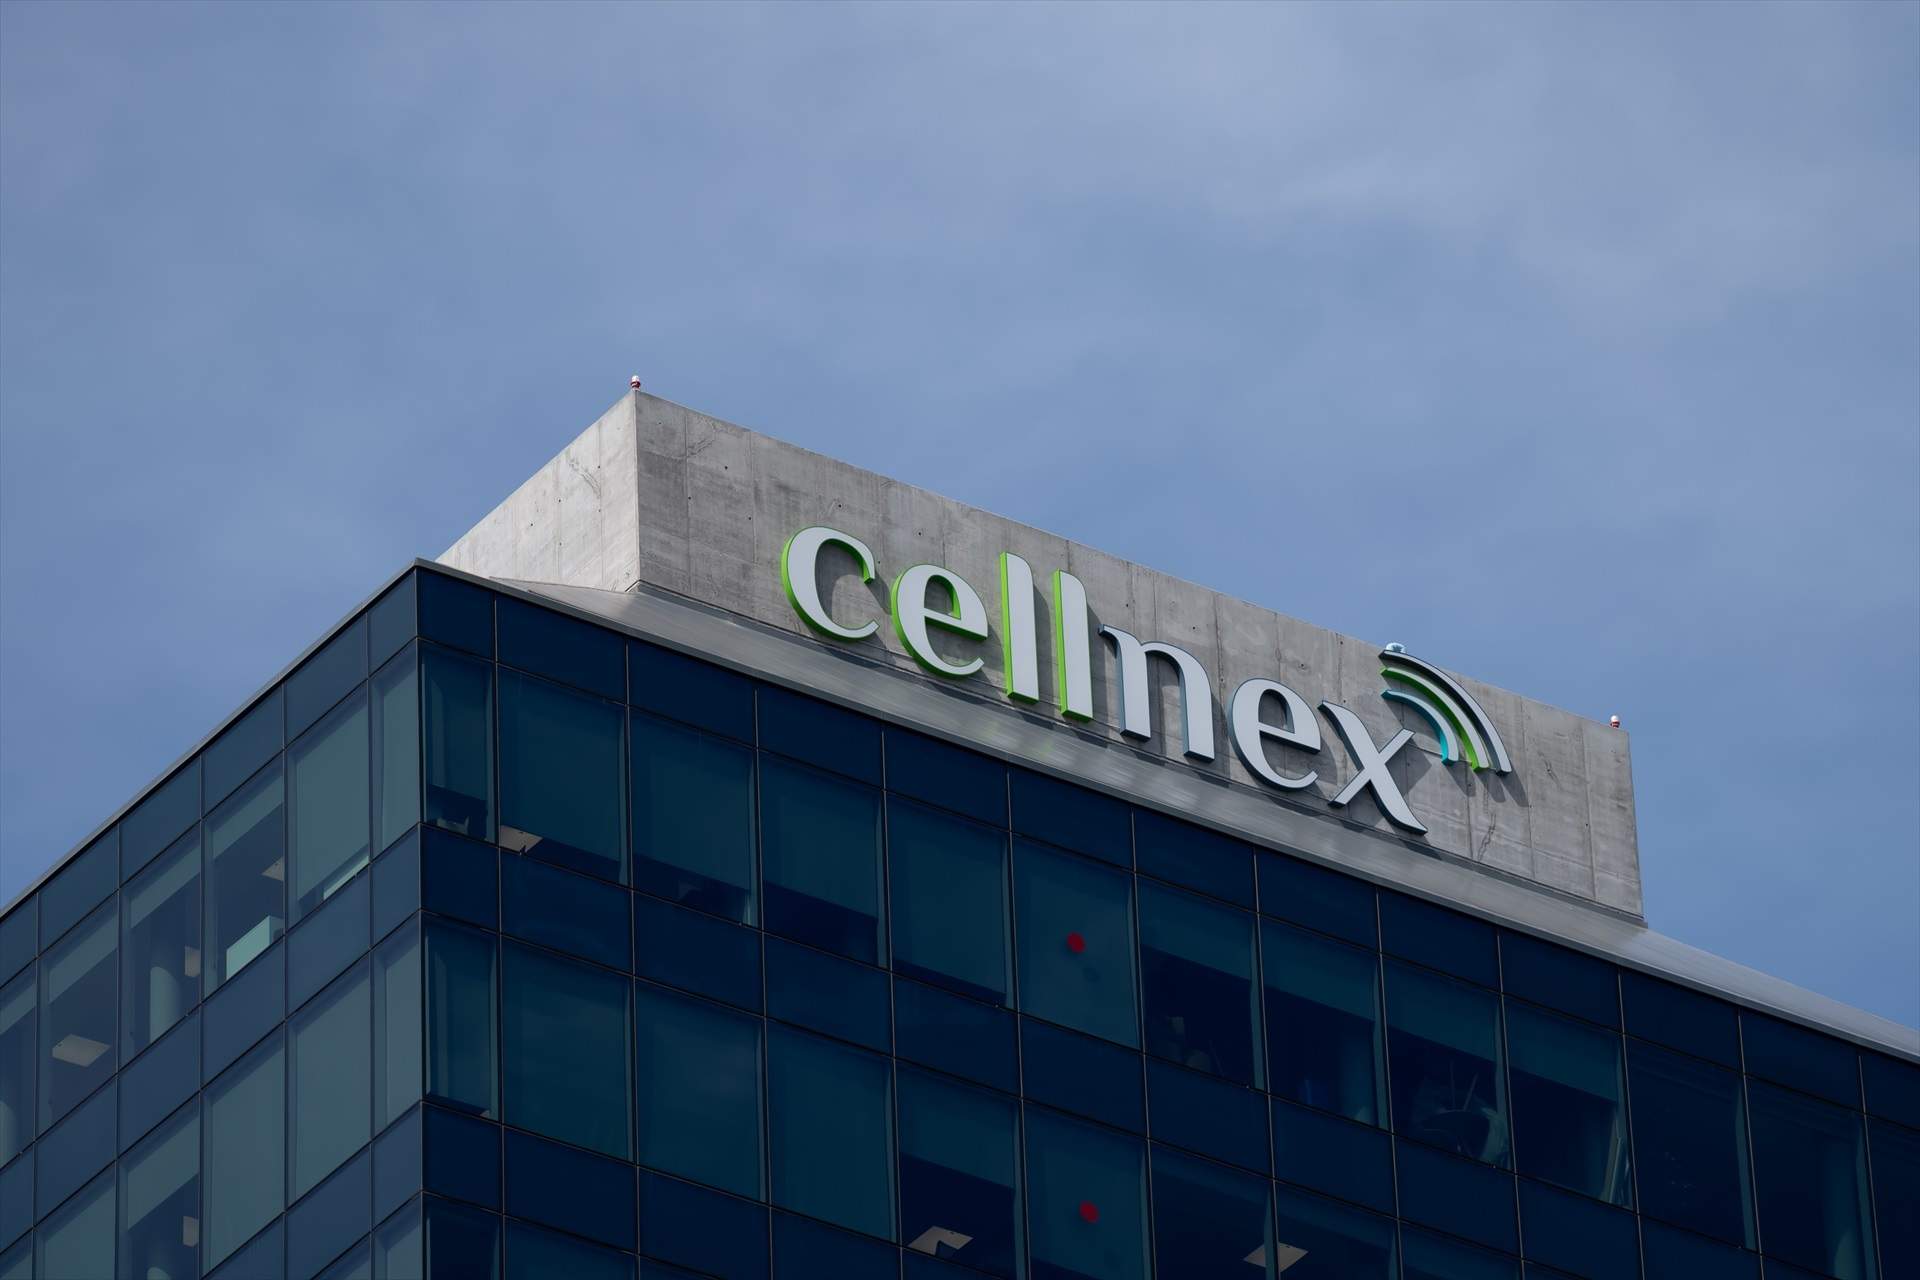 Criteria logra 613 millones con la venta de sus acciones de Cellnex